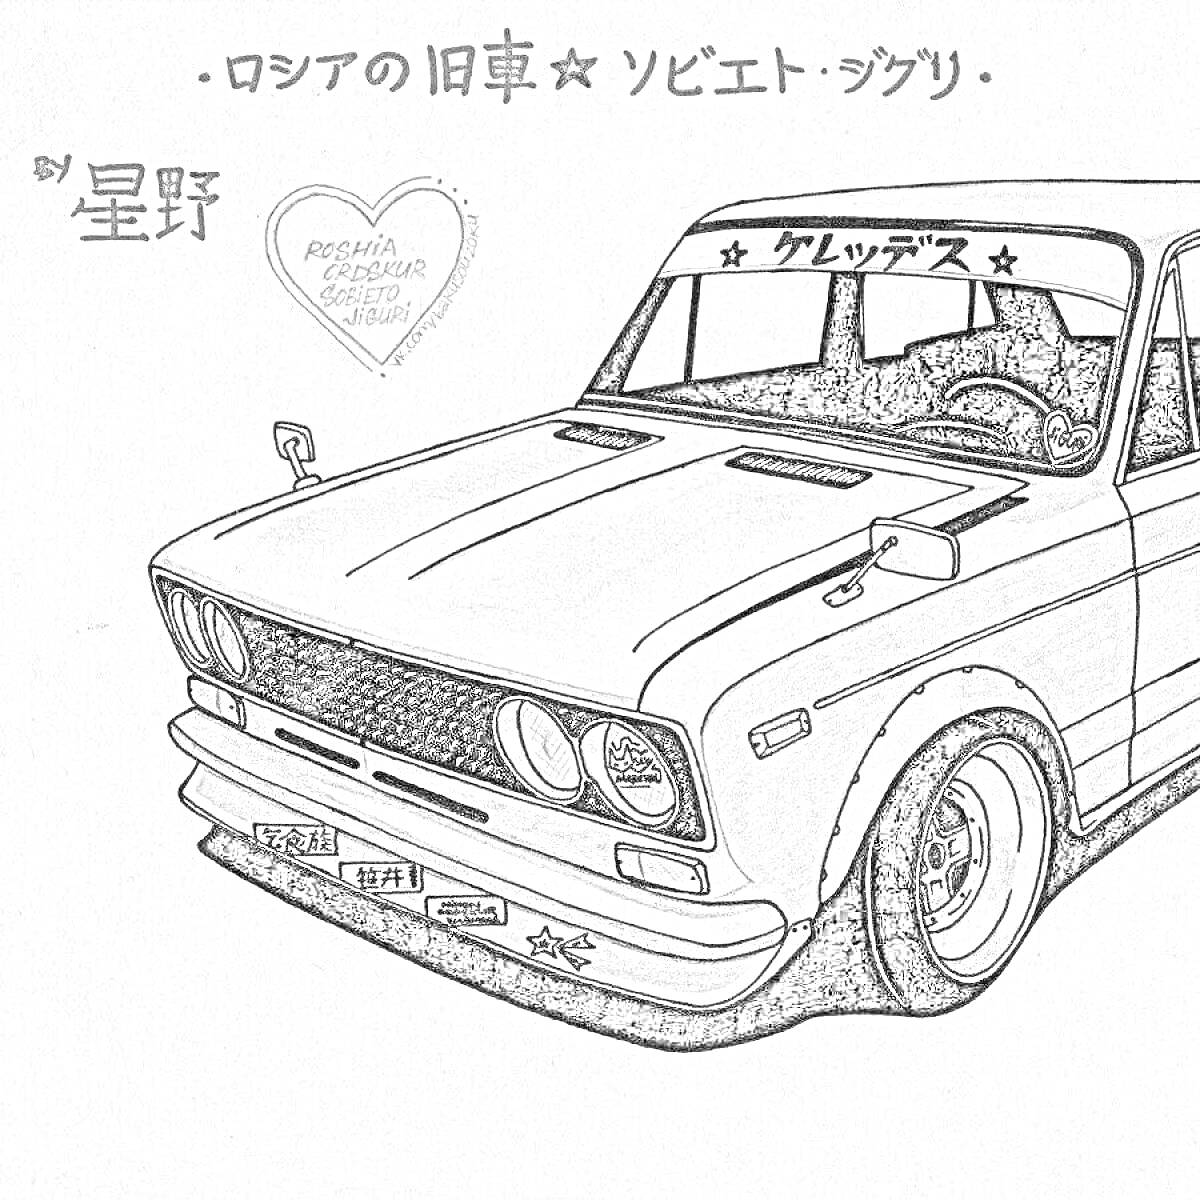 Раскраска Ретро автомобиль с надписями, сердечком и элементами тюнинга